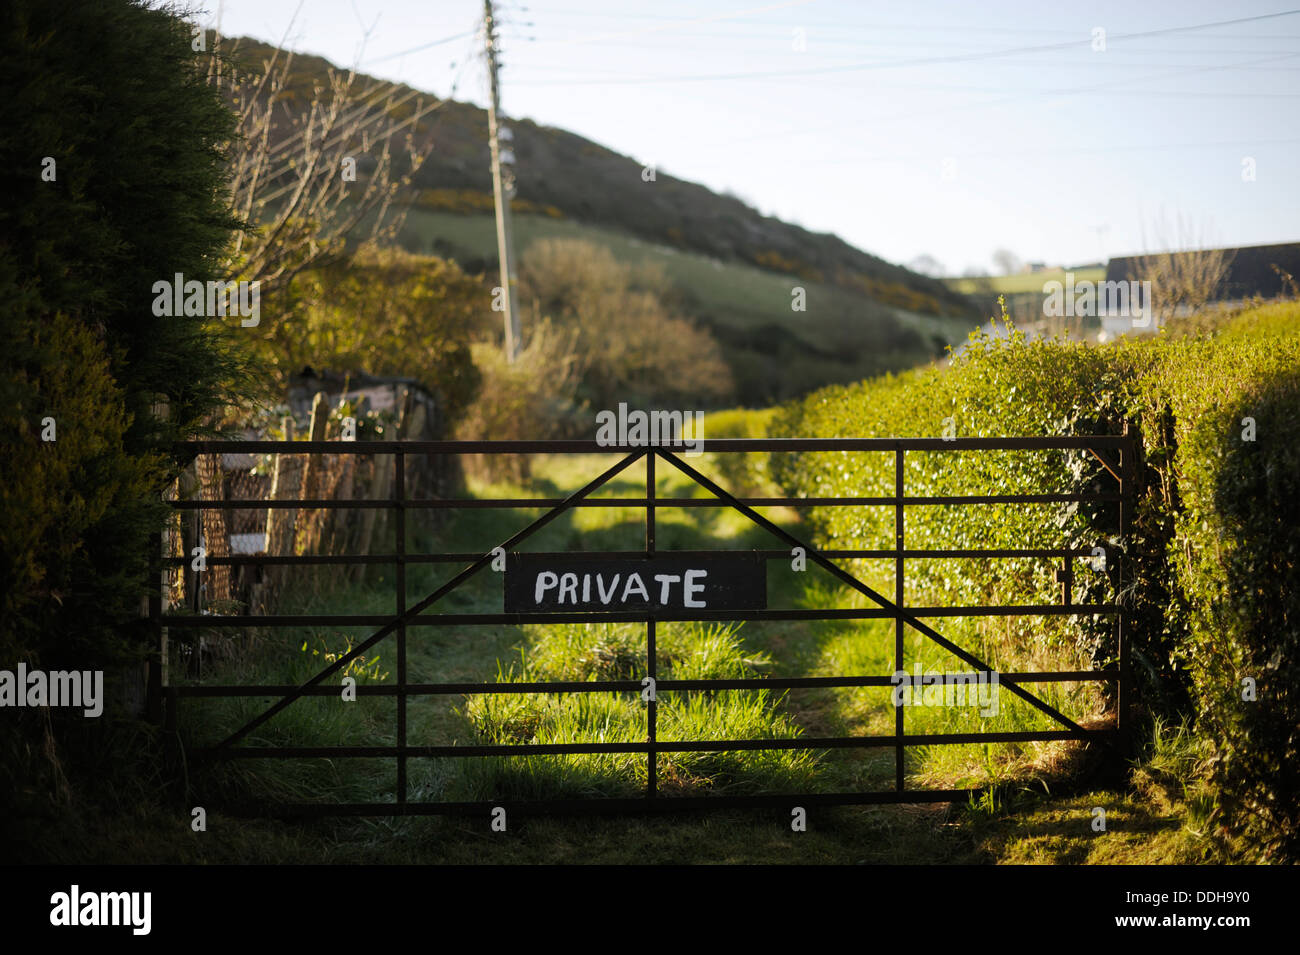 Private Zeichen auf ein Tor zu einer ländlichen grünen Gasse, Wales, UK Stockfoto